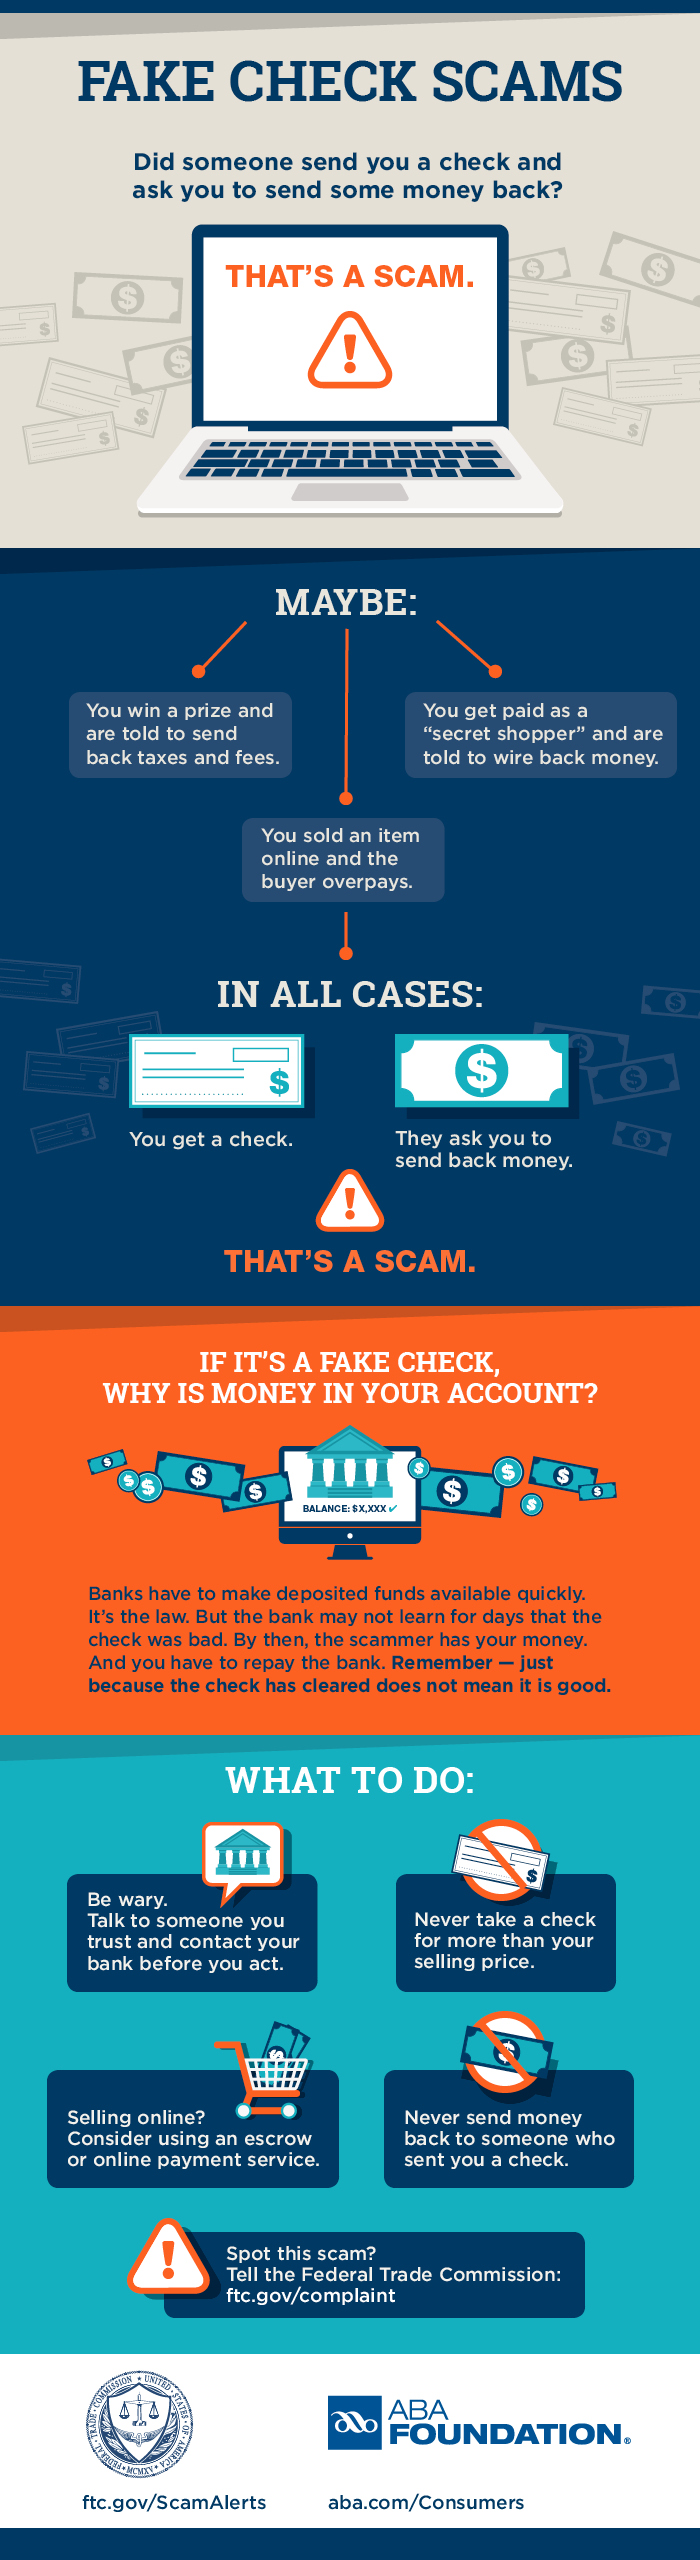 Infographic describing how fake check scams work